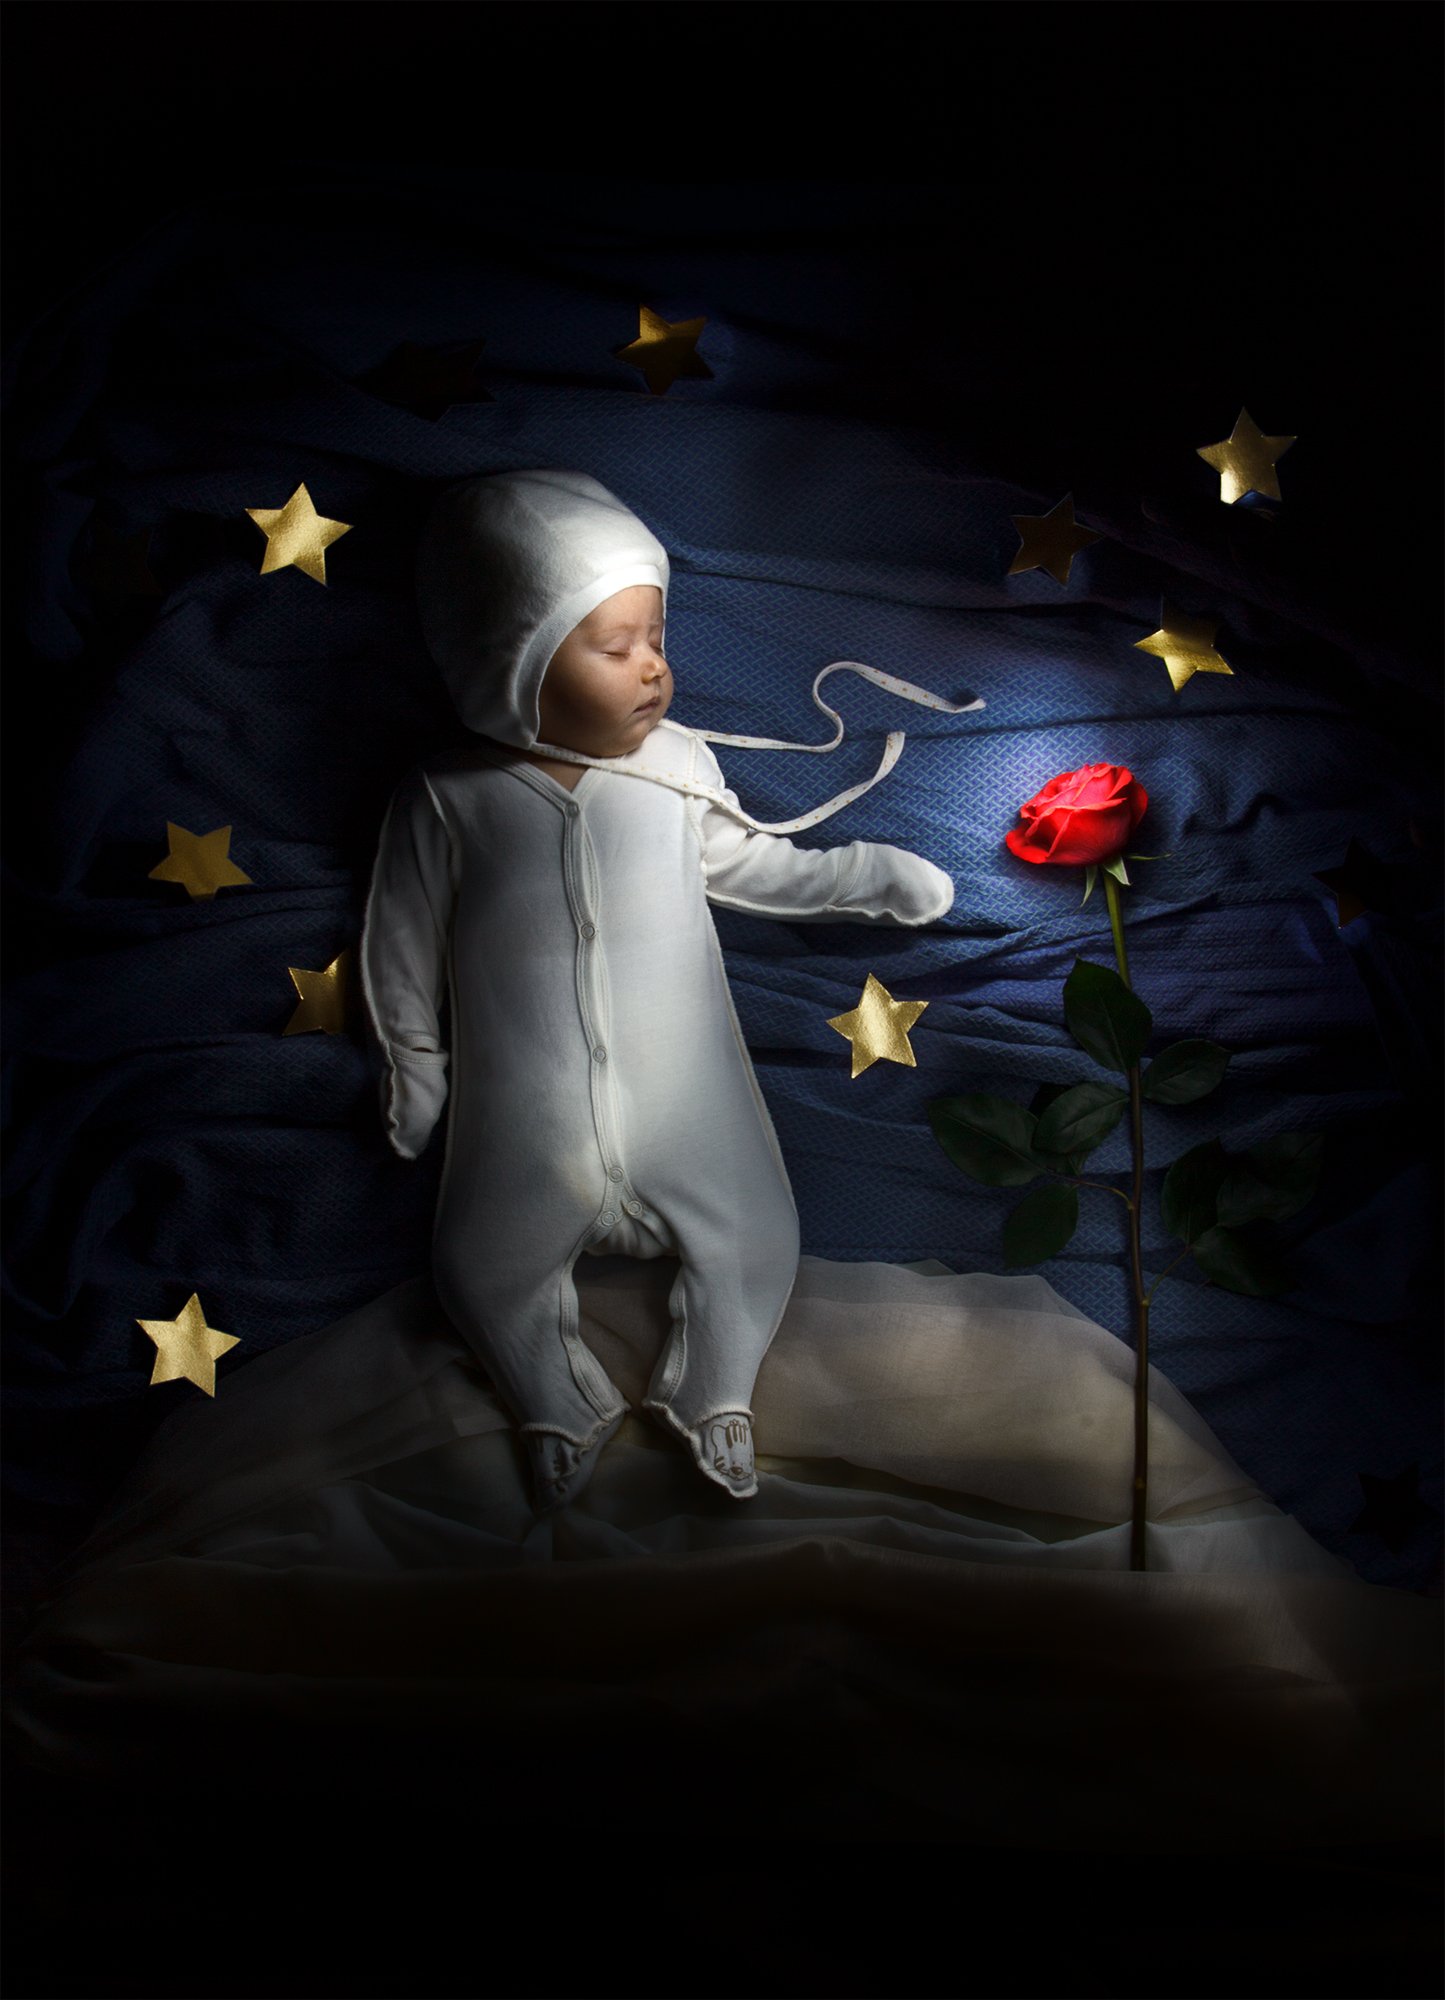 детская фотография, детство, сказка, портрет, сон, сны, длинная выдержка, световая кисть, Андрей Голов